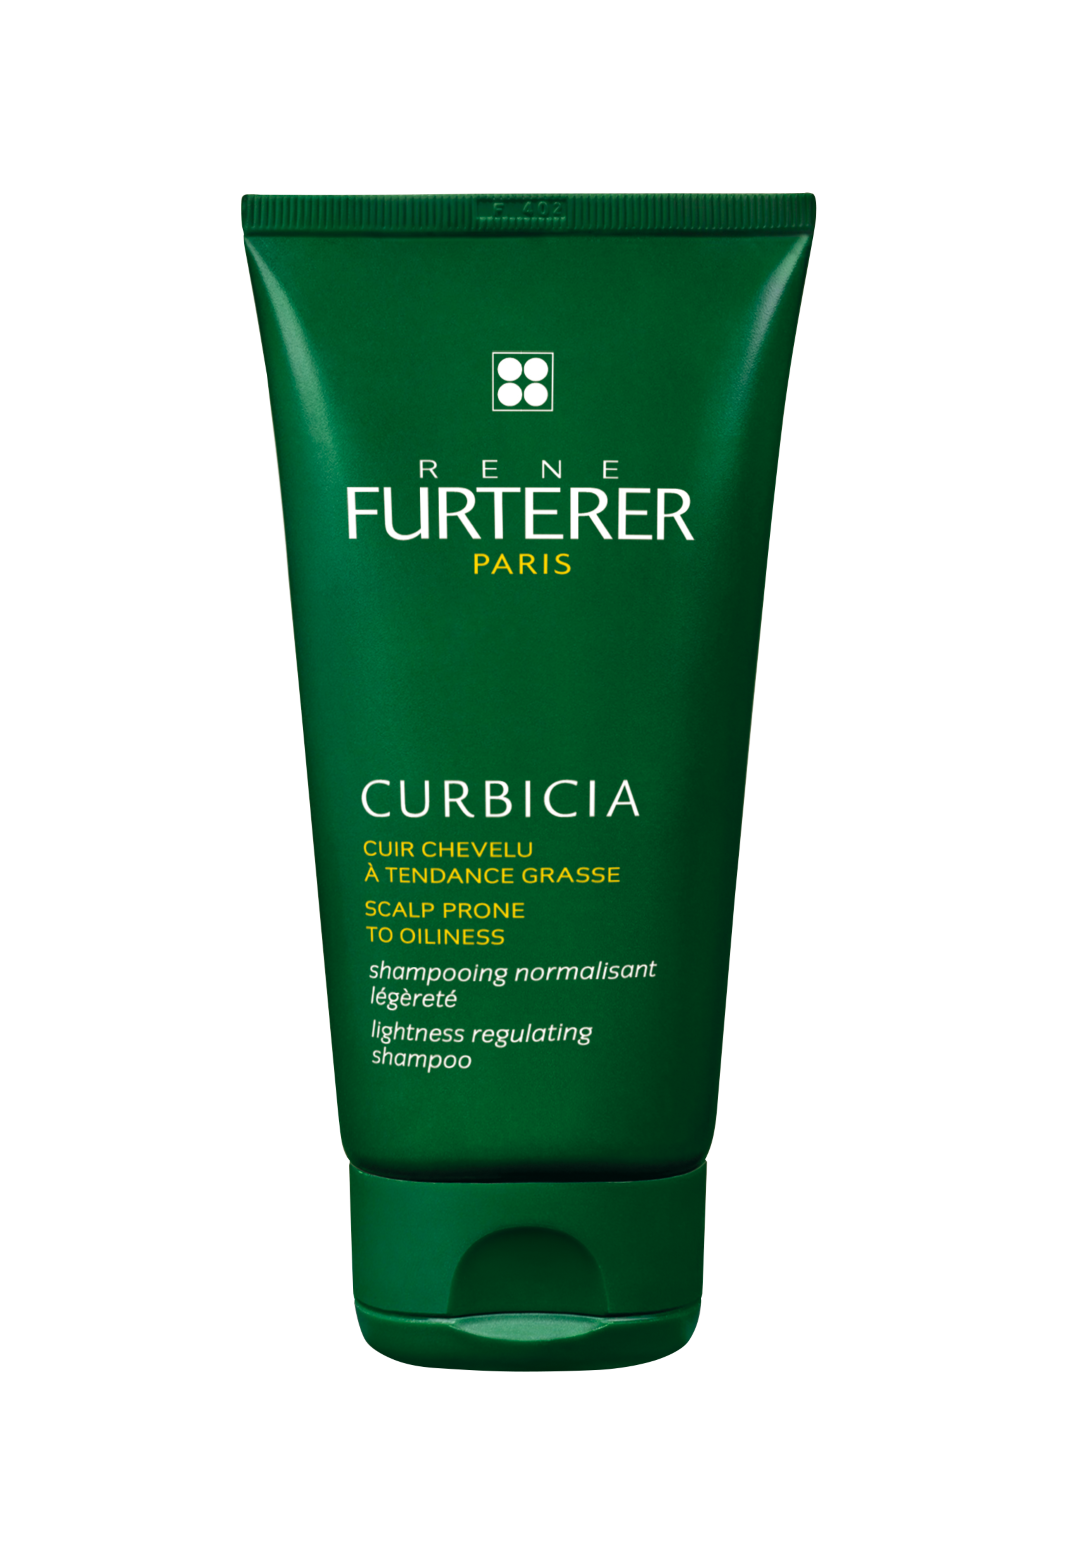 René Furterer Curbicia Lightness Regulating Shampoo 150ml (5.07fl oz)